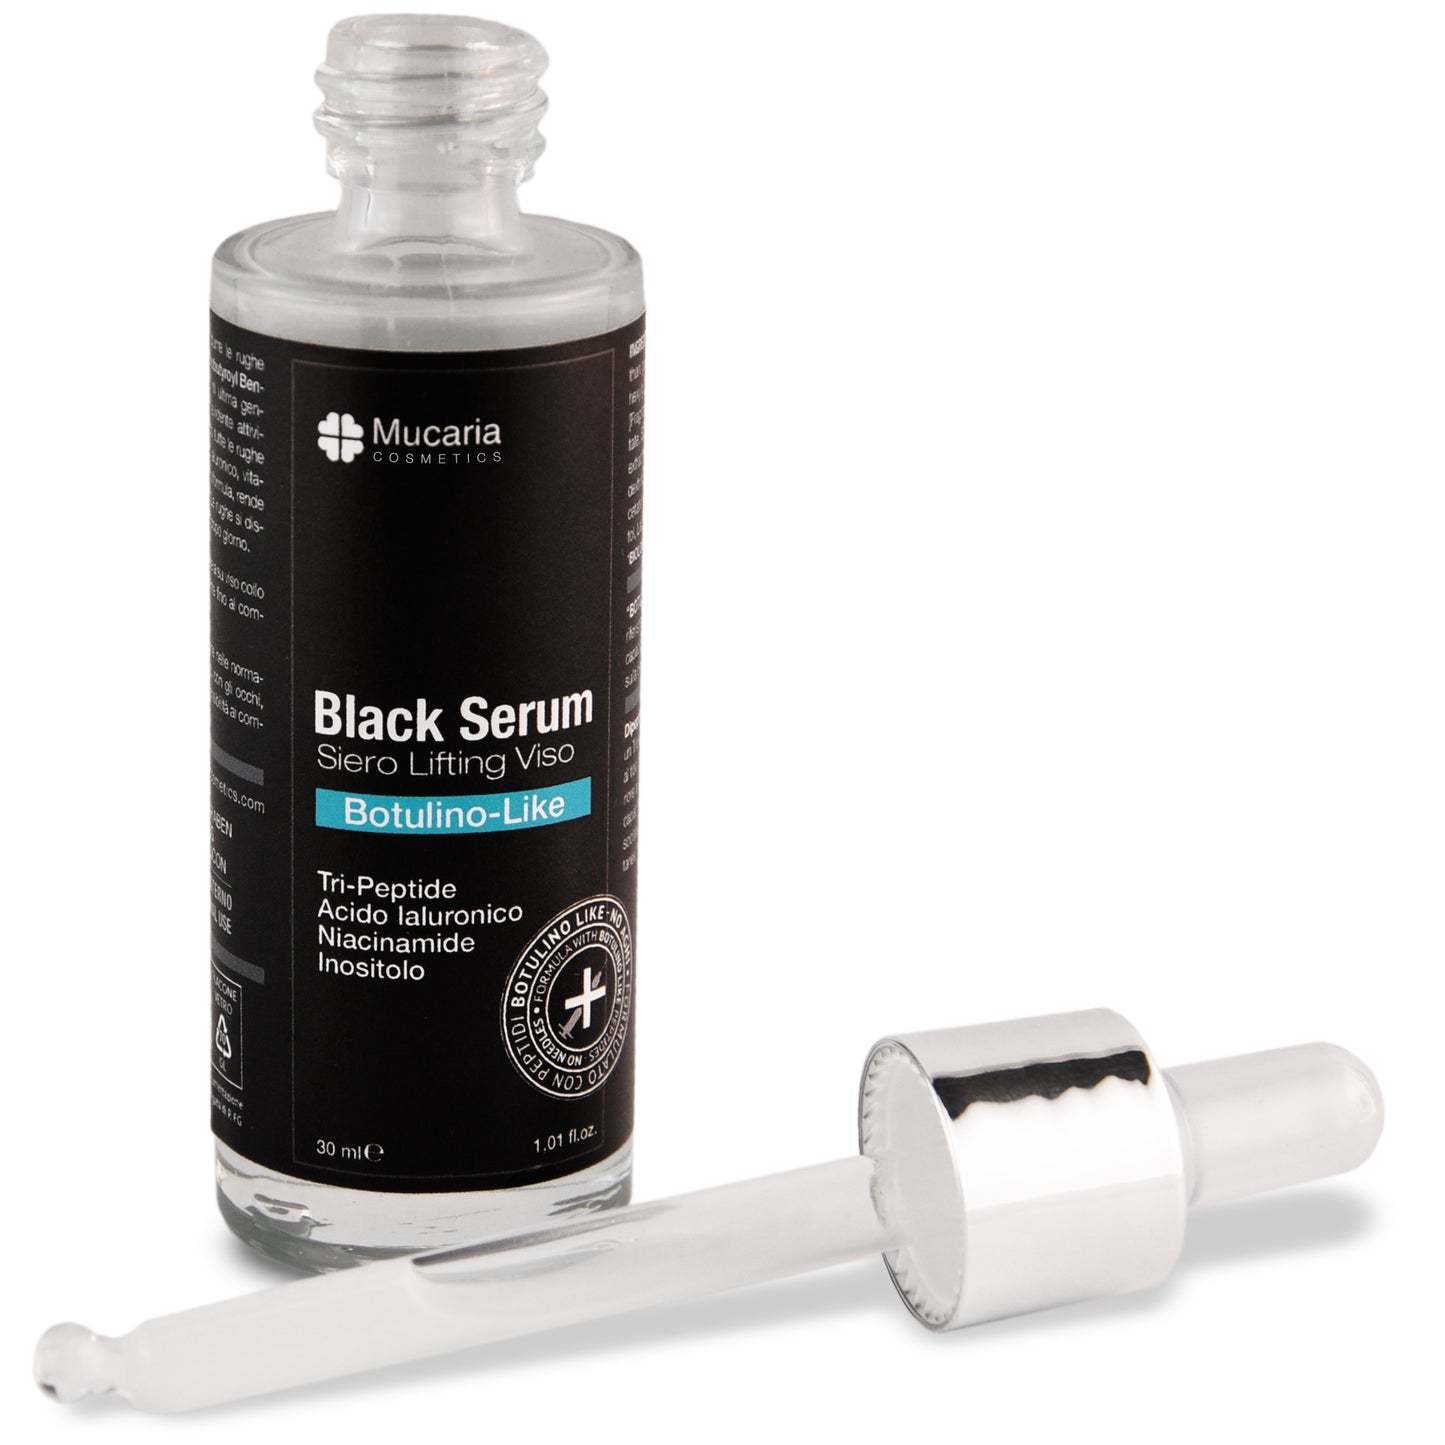 Black Serum - Siero Lifting Viso "BotulinoLike"